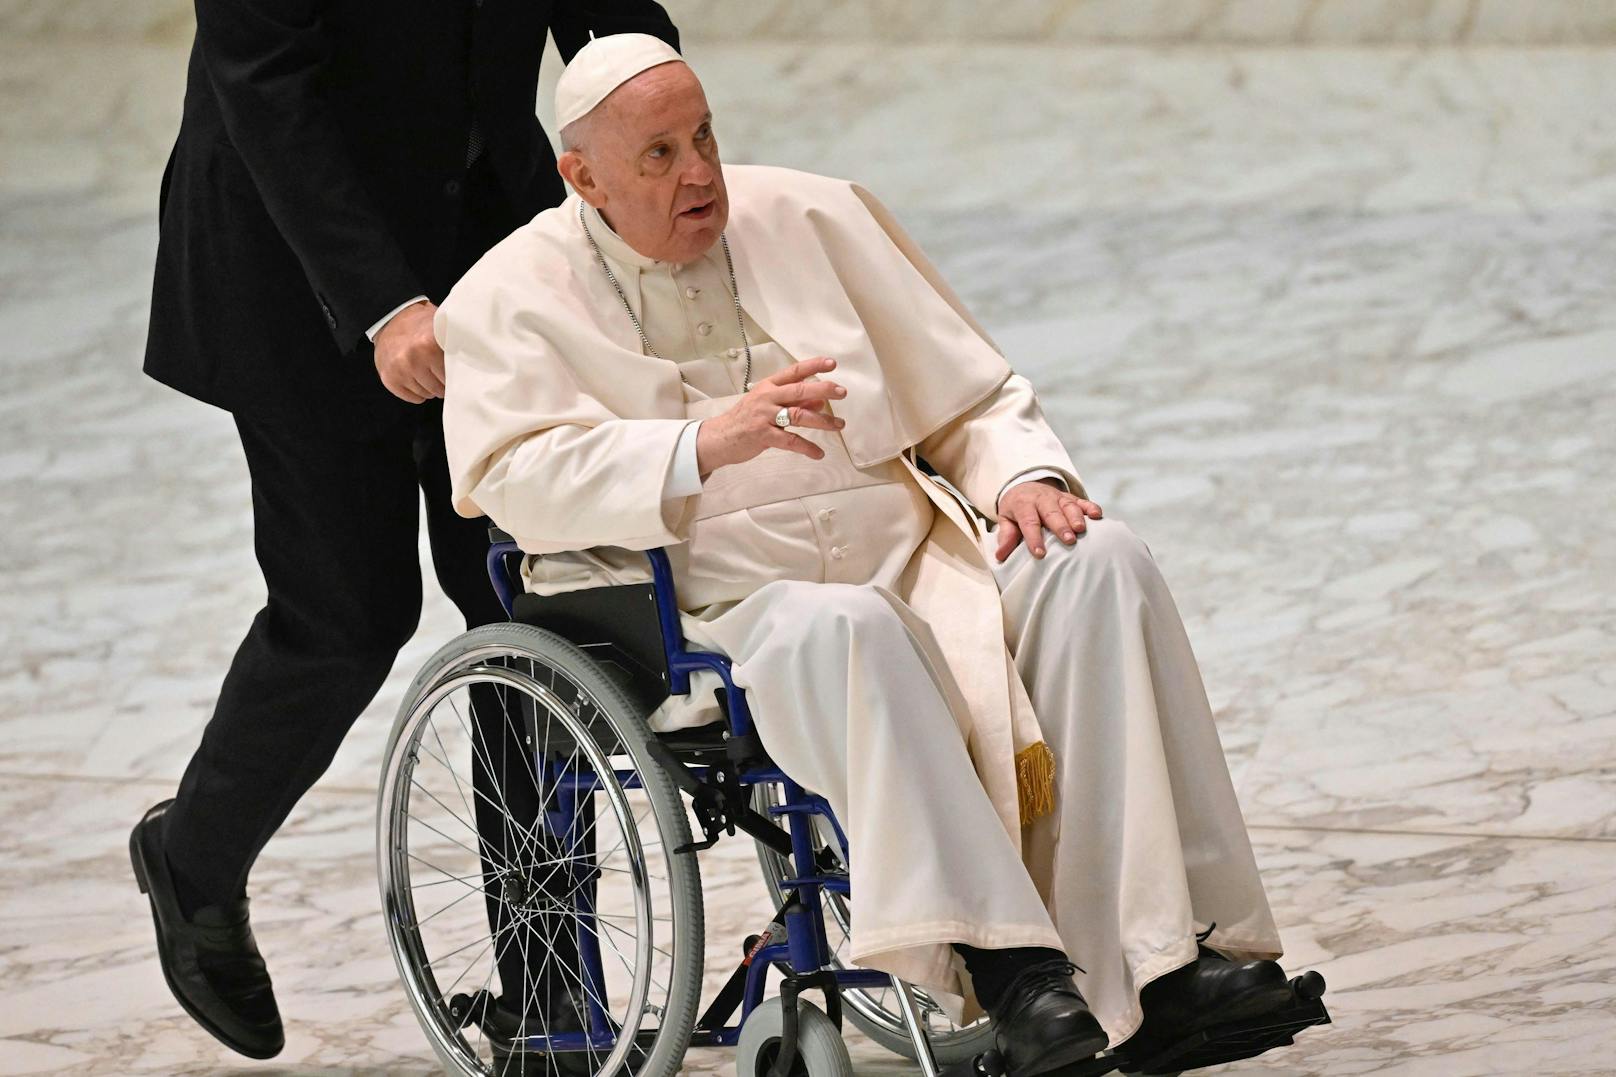 Papst Franziskus nach Not-OP schon wieder am Scherzen